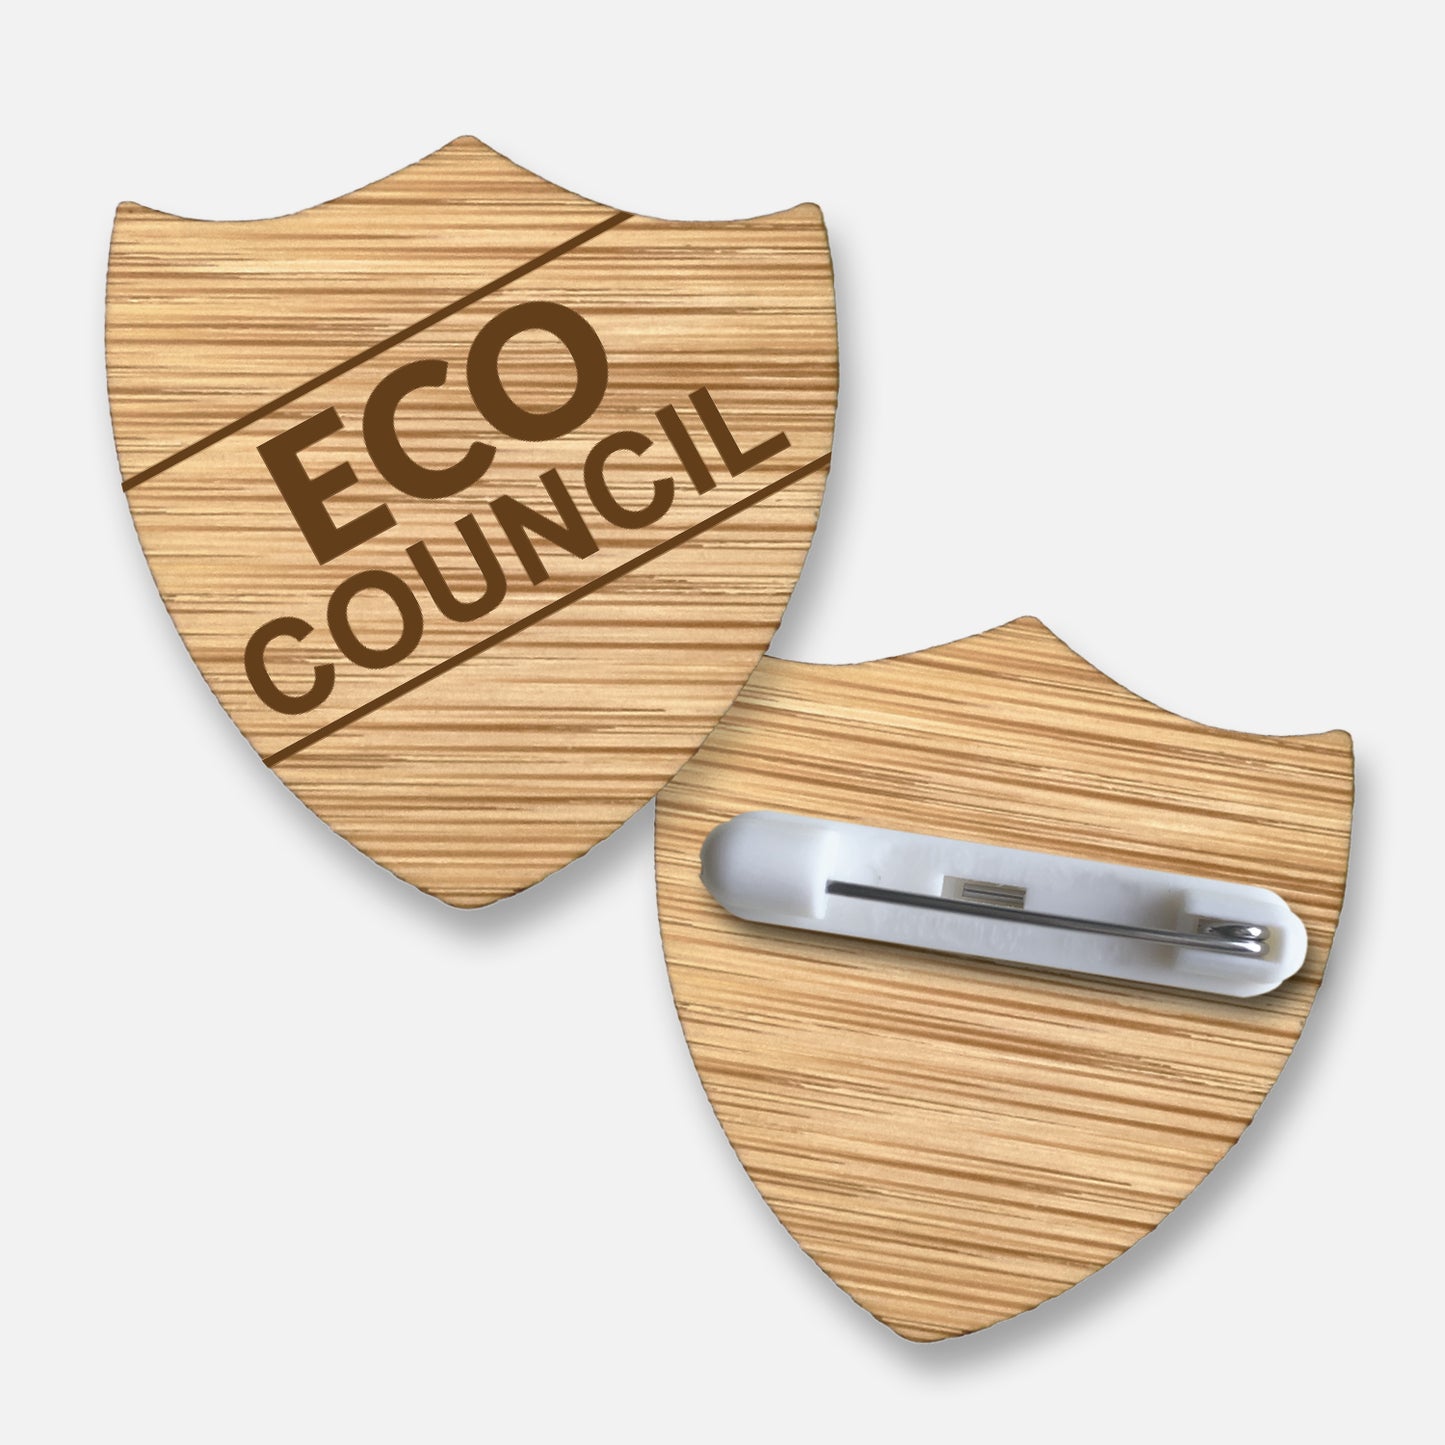 Bamboo Shield Natural Eco Council Badge - 35mm